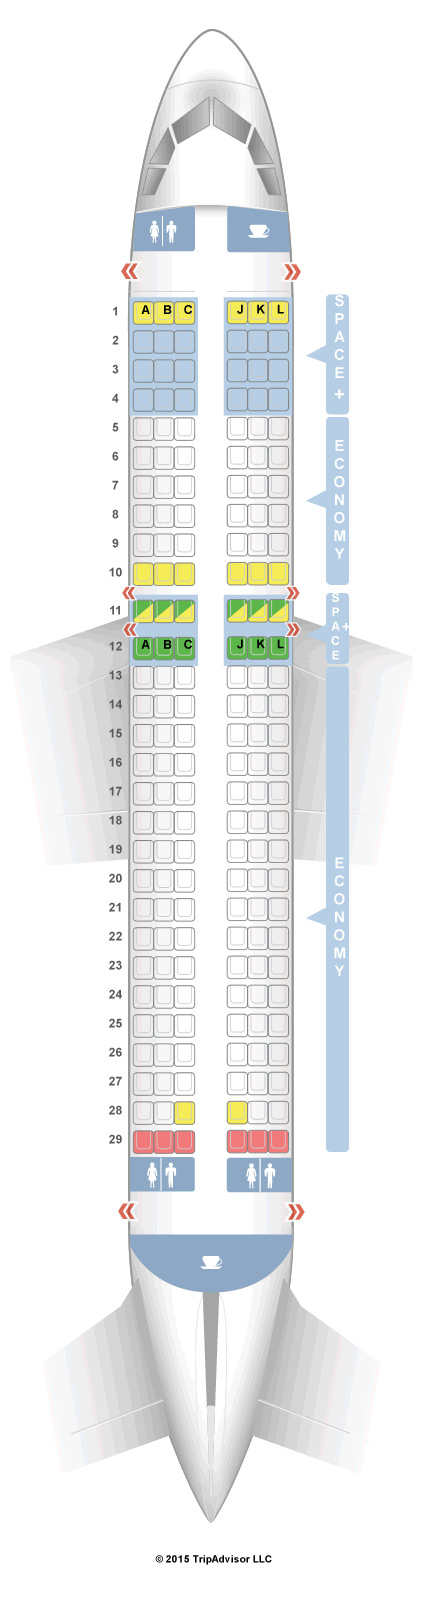 Lan Airbus A320 Seating Chart